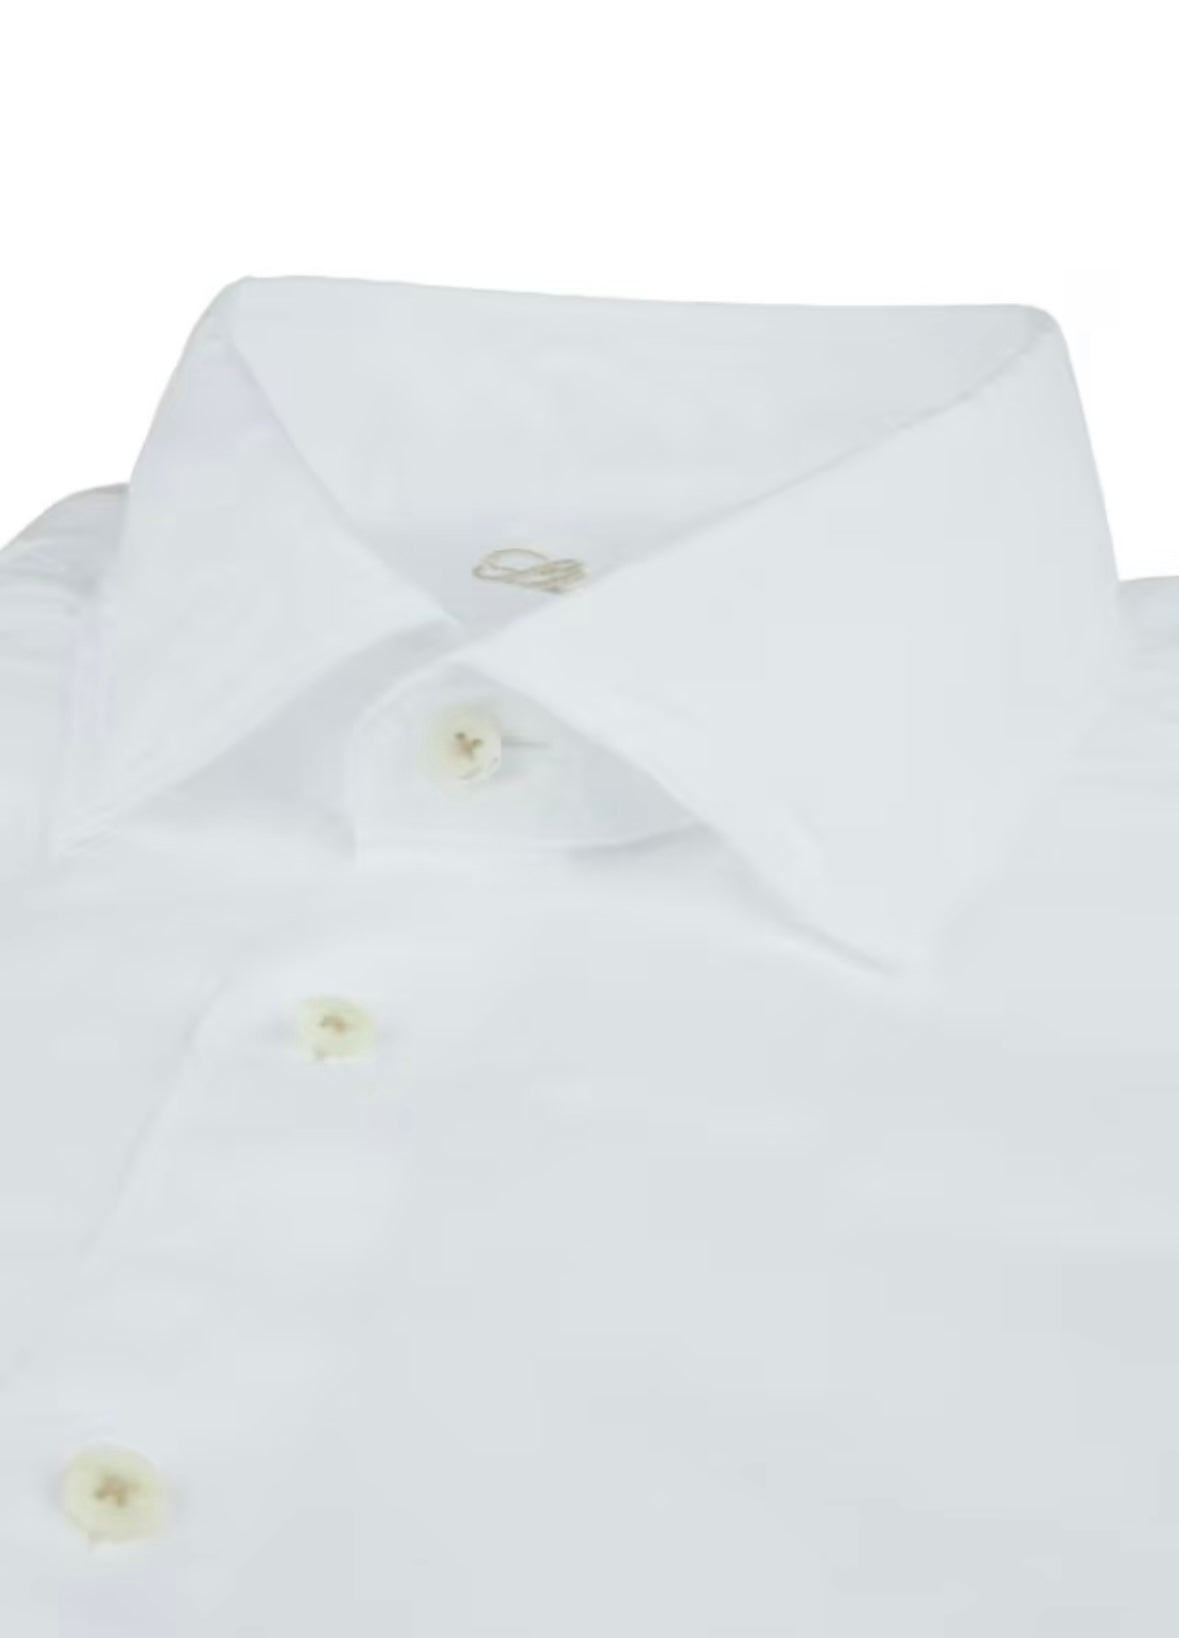 Stenströms Linen shirt fitted body - 675721 7970 000